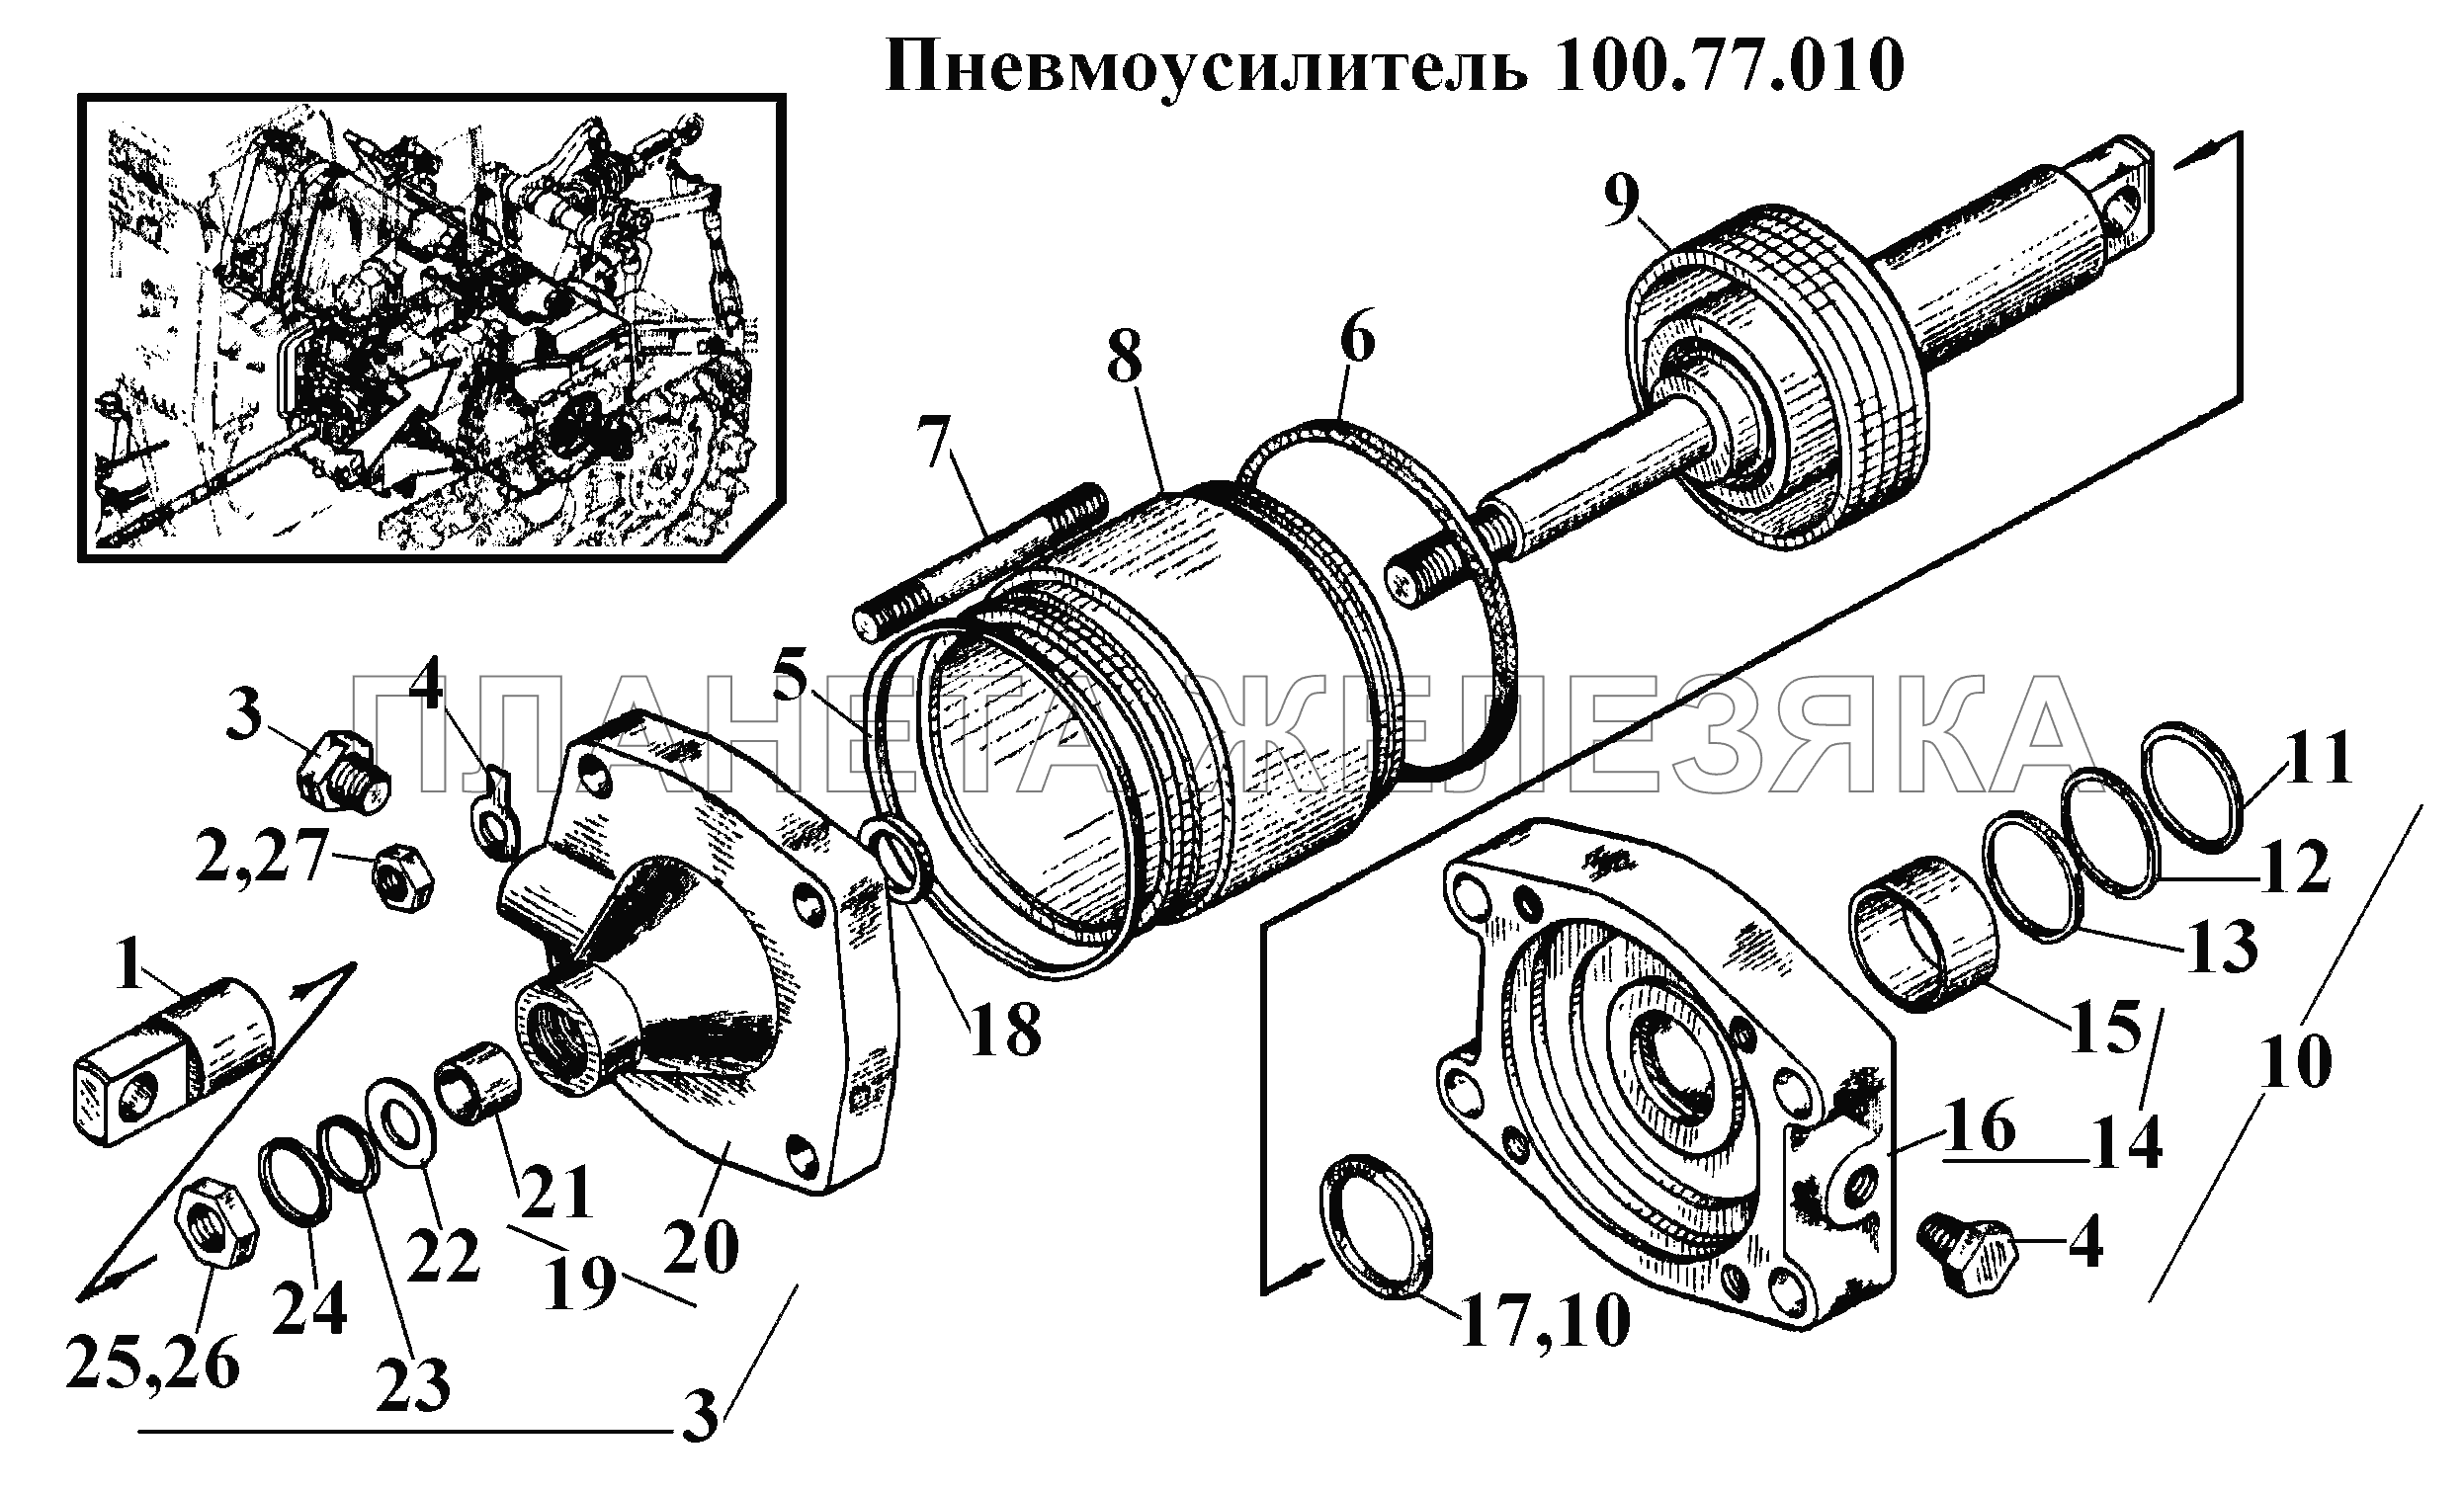 Пневмоусилитель 100.77.010 ВТ-100Д